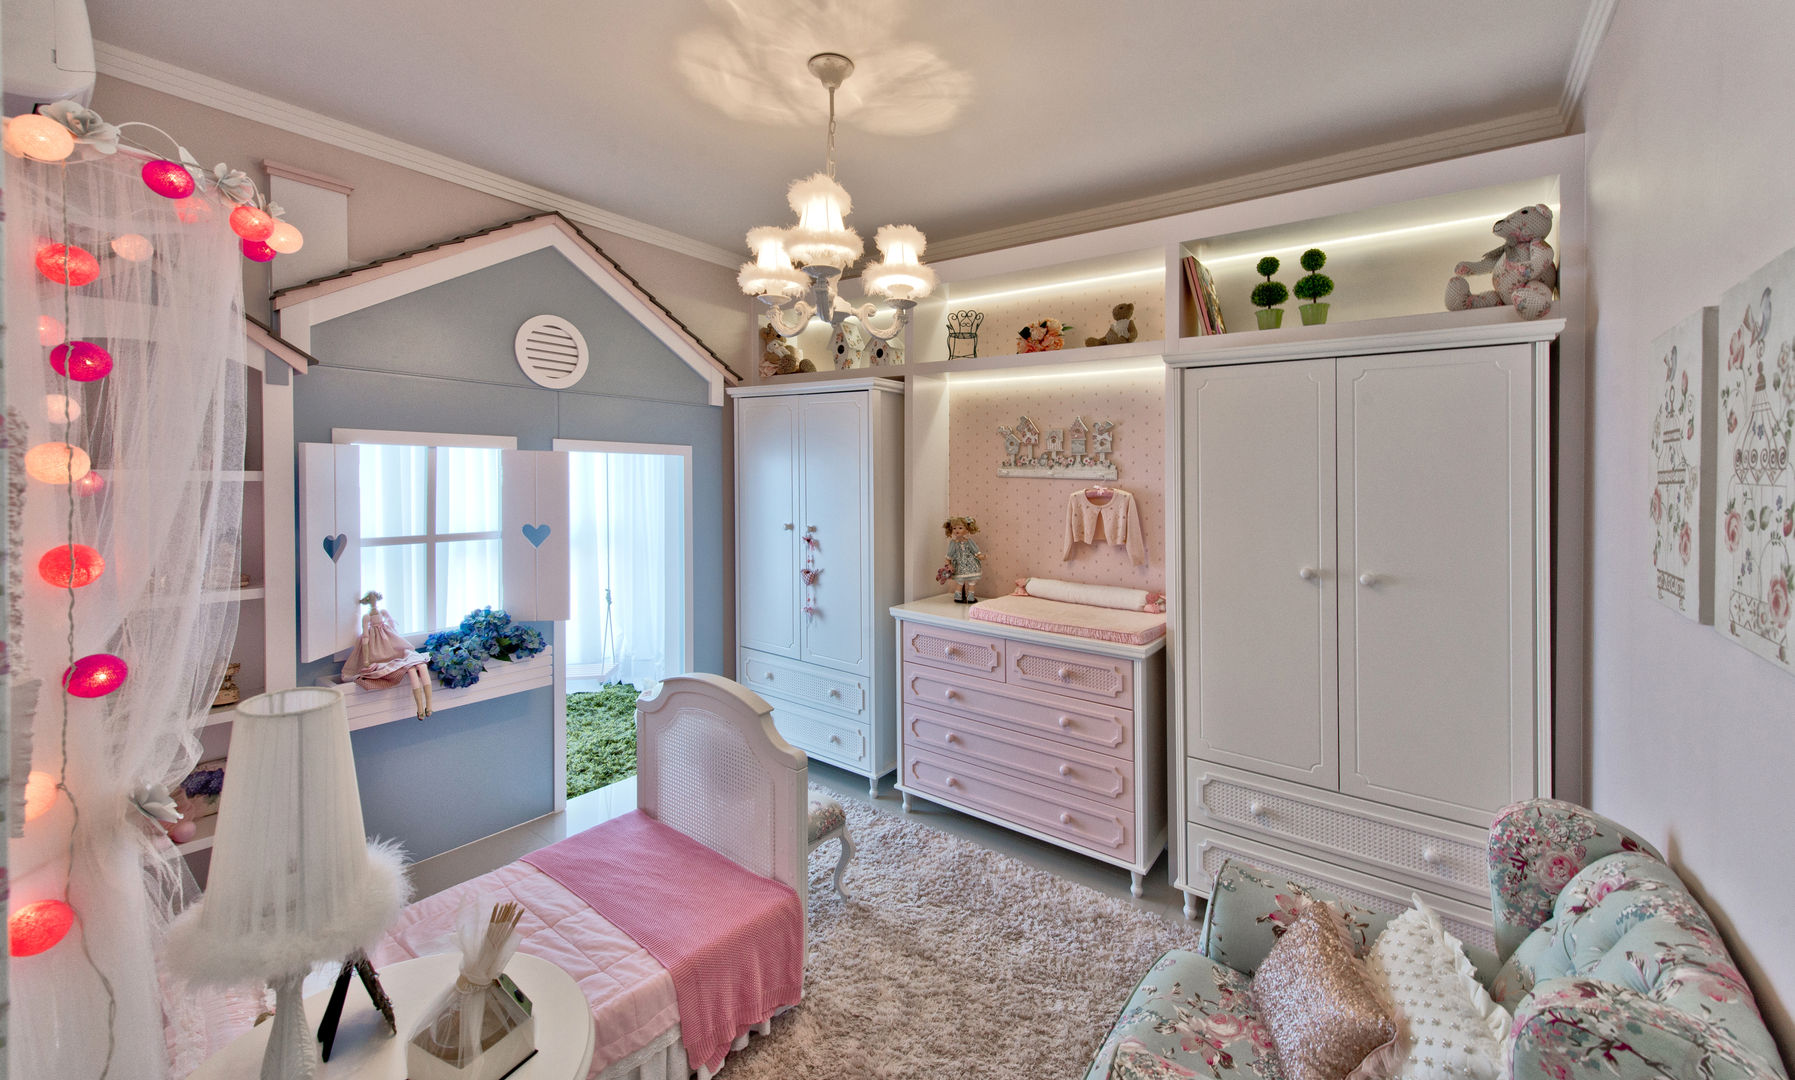 Um quarto de boneca, Espaço do Traço arquitetura Espaço do Traço arquitetura Детская комнатa в стиле кантри